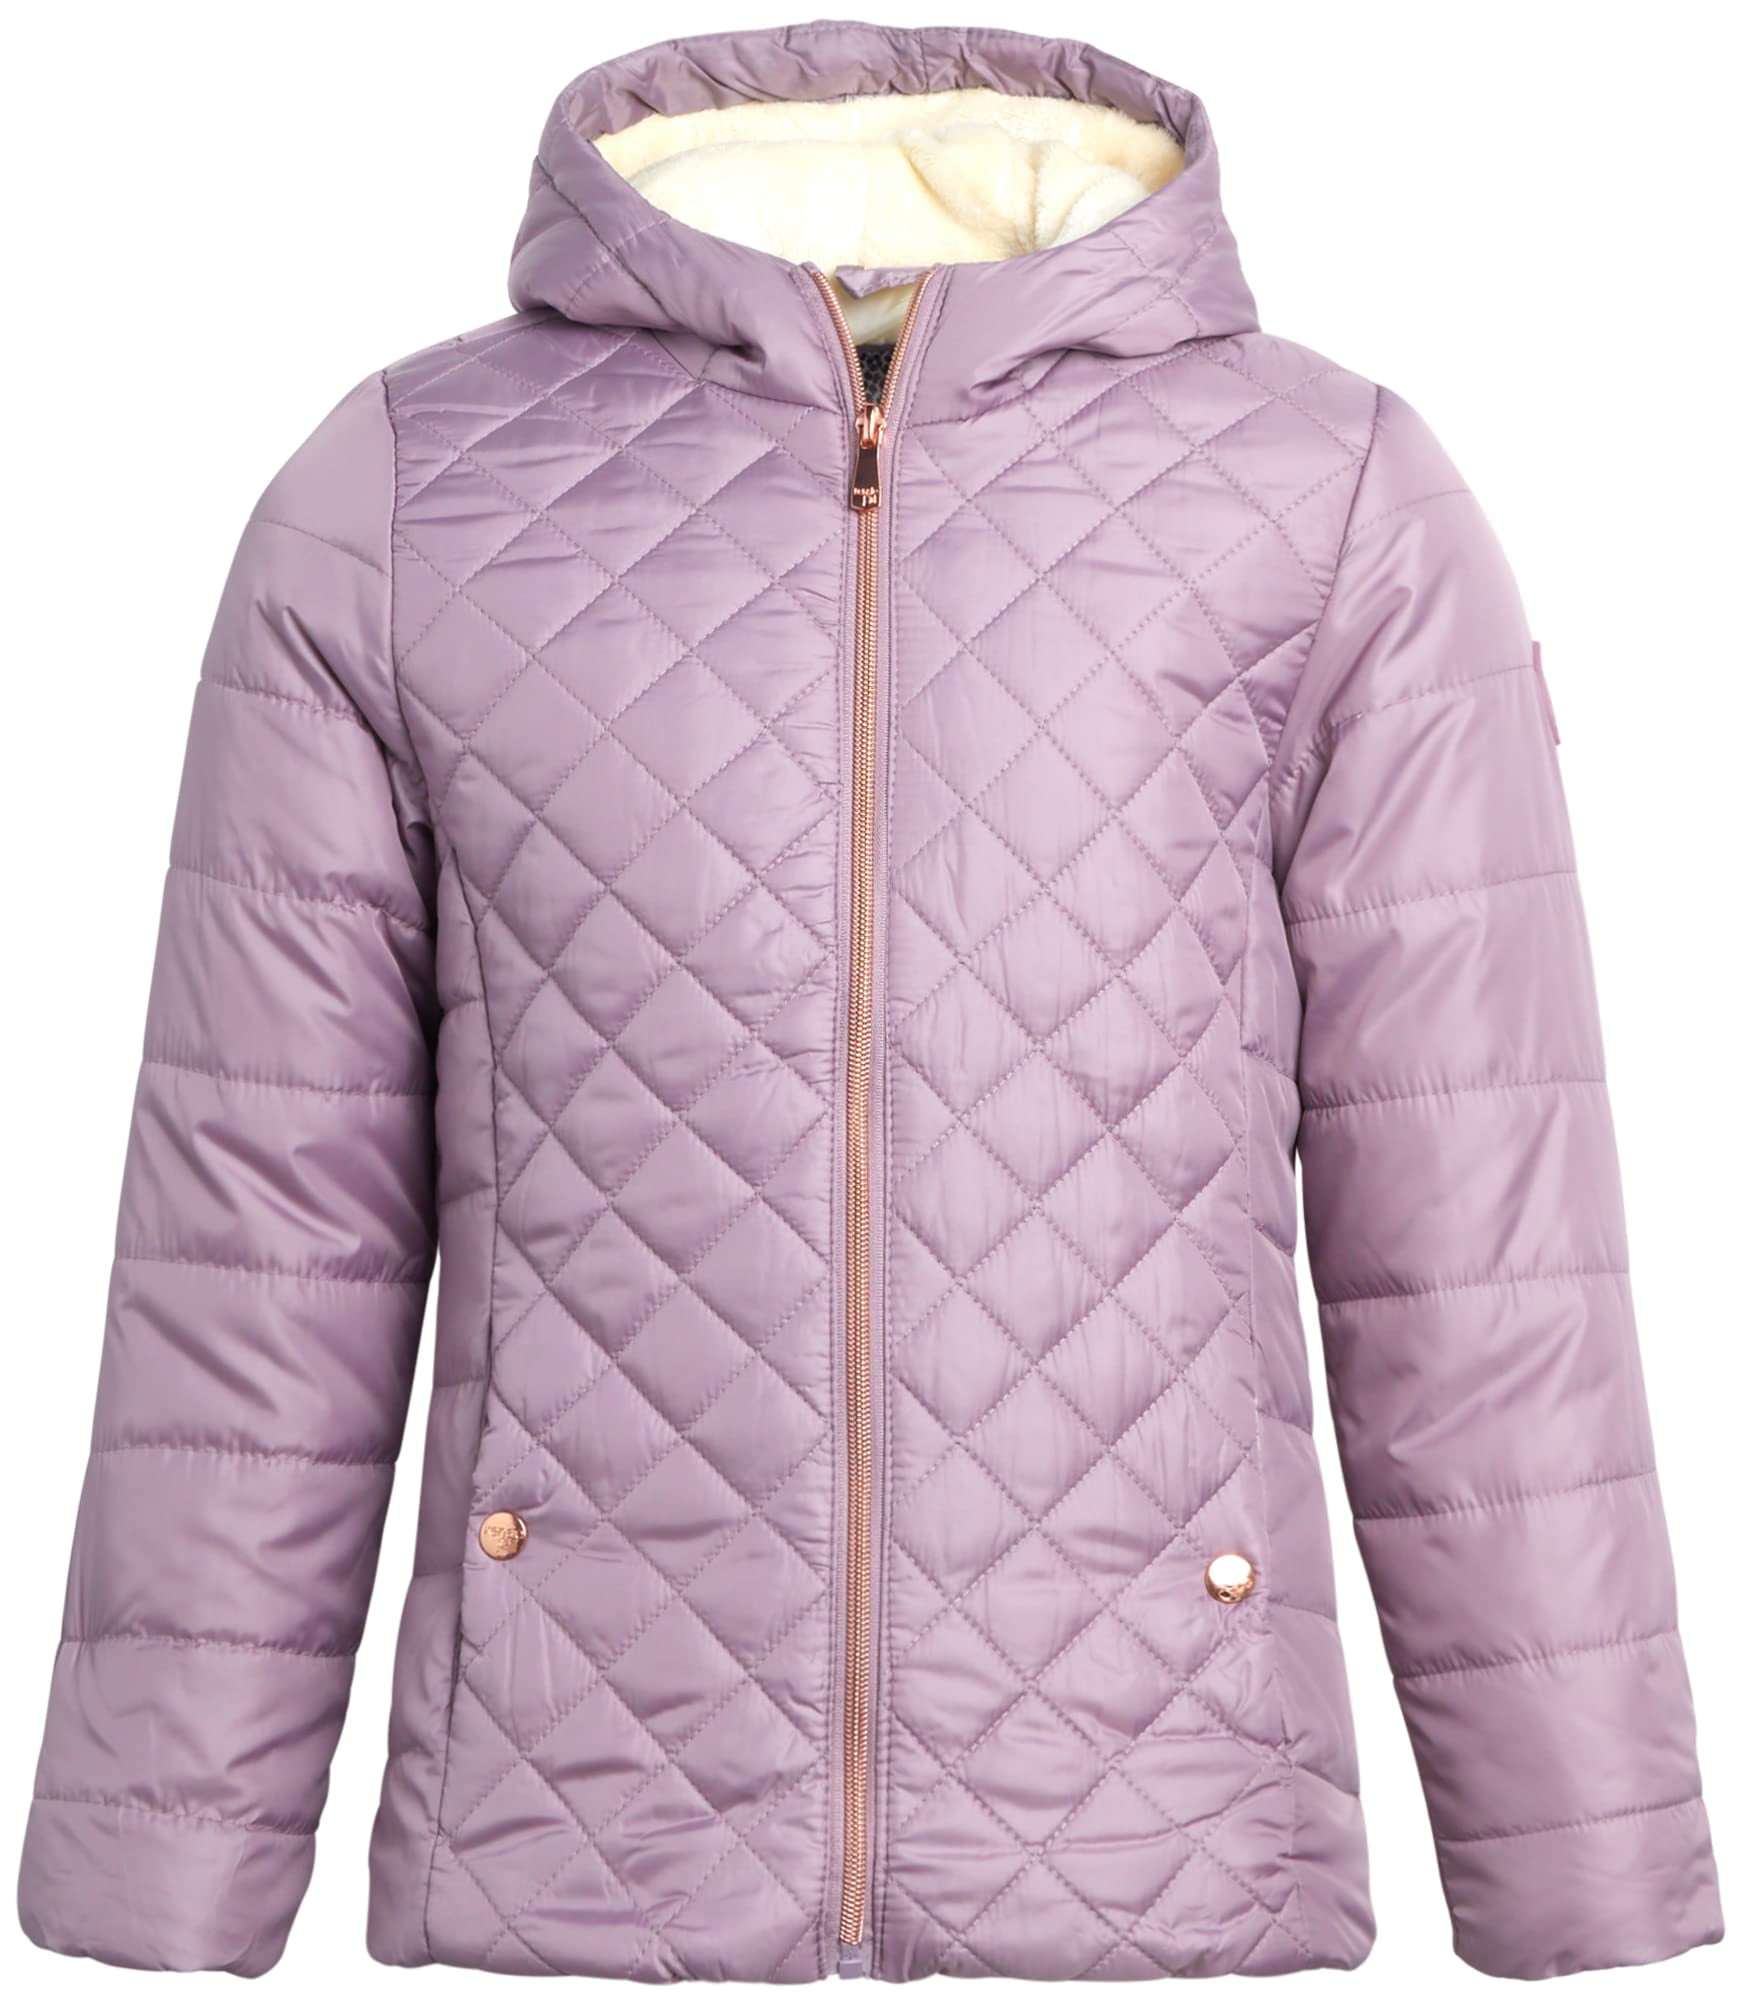 KENSIE GIRL Girls' Winter Jacket - Weather Resistant Lightweight ...